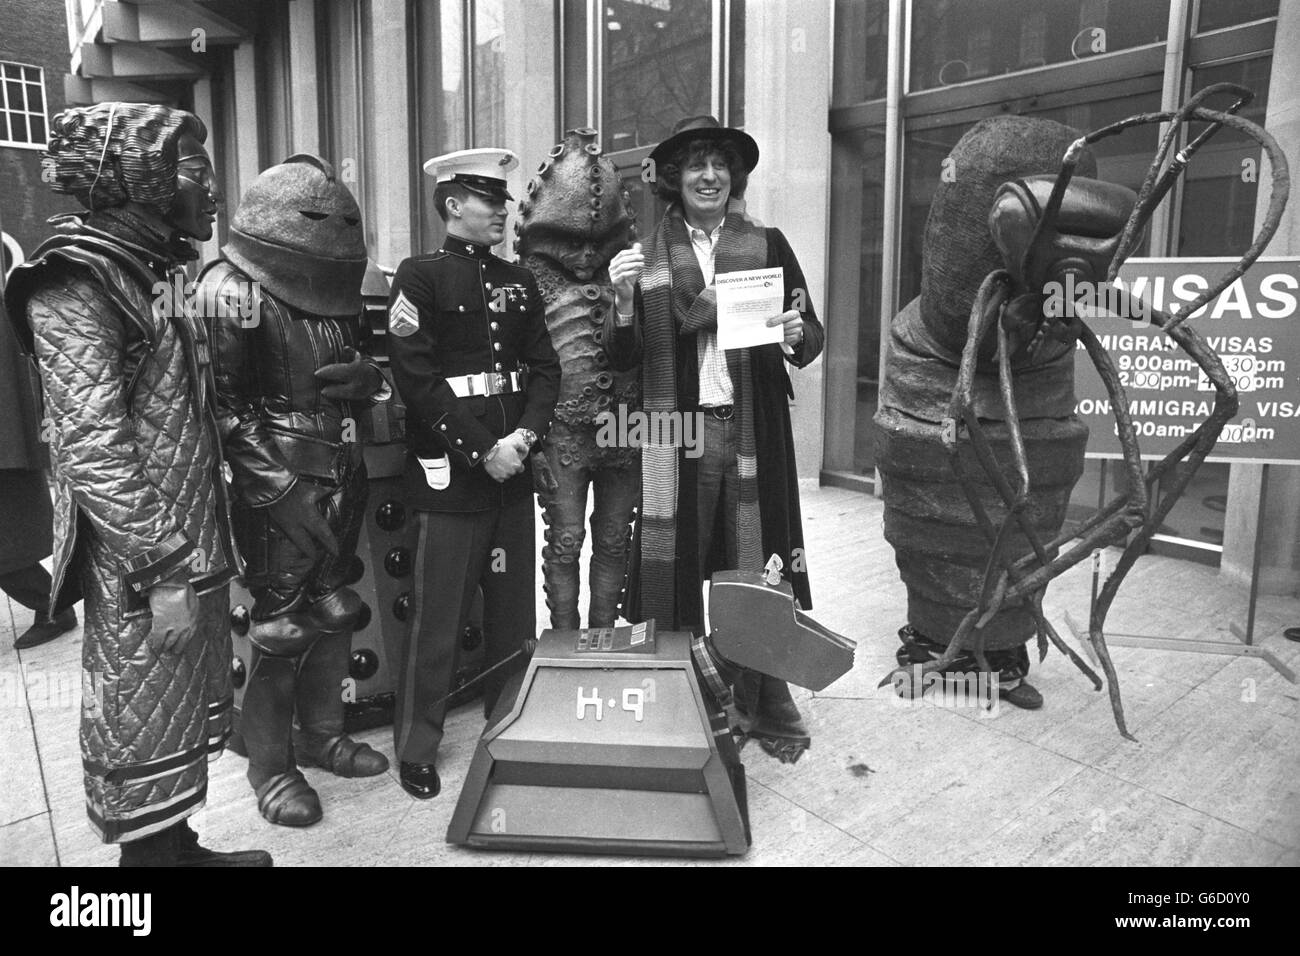 Tom Baker en tant que Doctor Who et un groupe de monstres du spectacle de science-fiction s'alignent devant l'ambassade américaine à Grosvenor Square, où ils ont été rejoints par US Marine Frank Zigler de Dallas, Texas. La BBC fait une offre de vente pour diffuser l'émission en Amérique. Banque D'Images